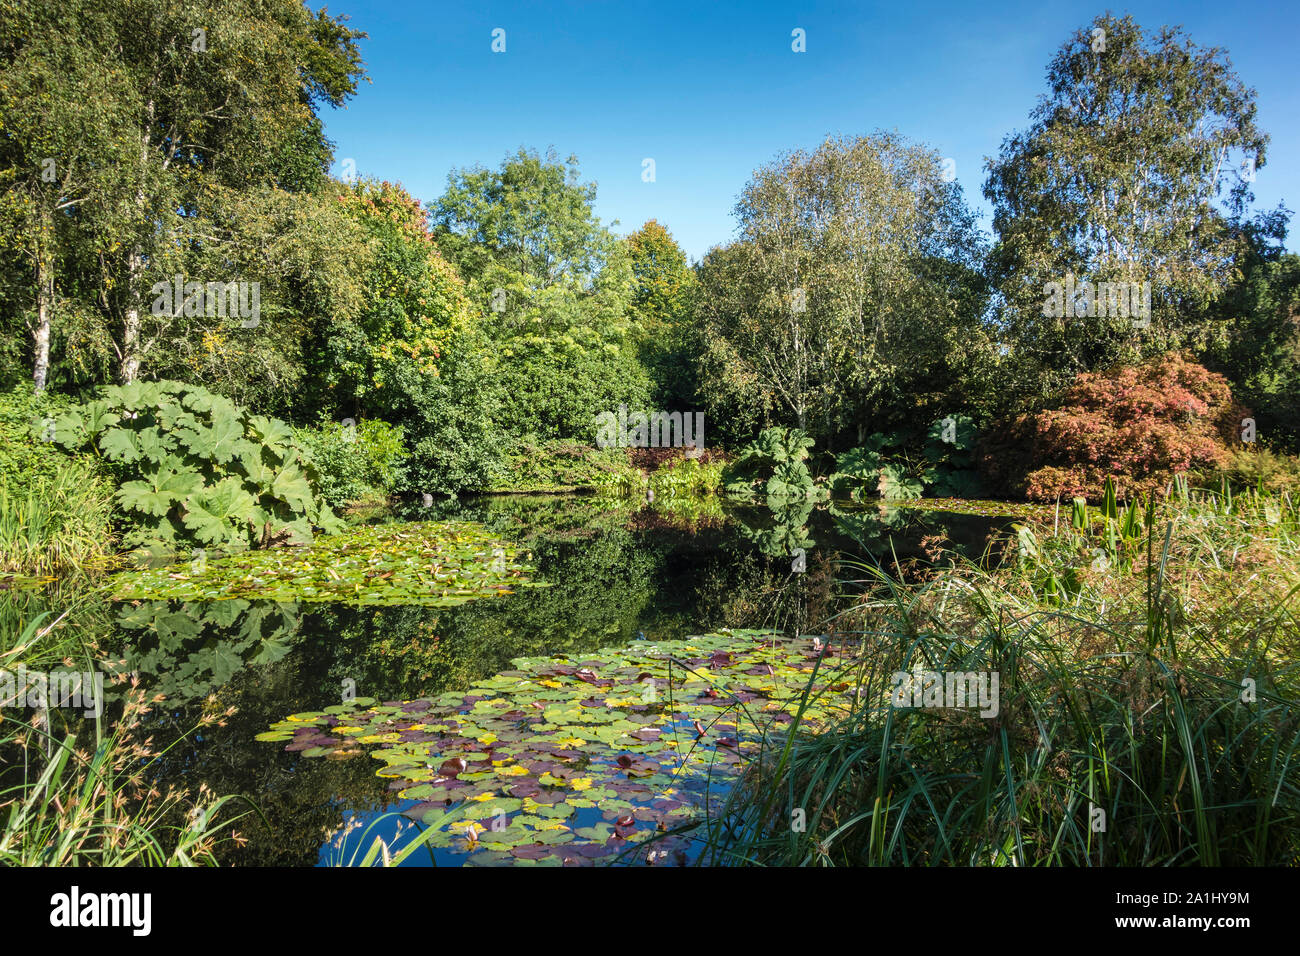 Rosemore RHS Garden, sul lago con ninfee, arbusti e alberi, Devon, Inghilterra, Regno Unito. Foto Stock